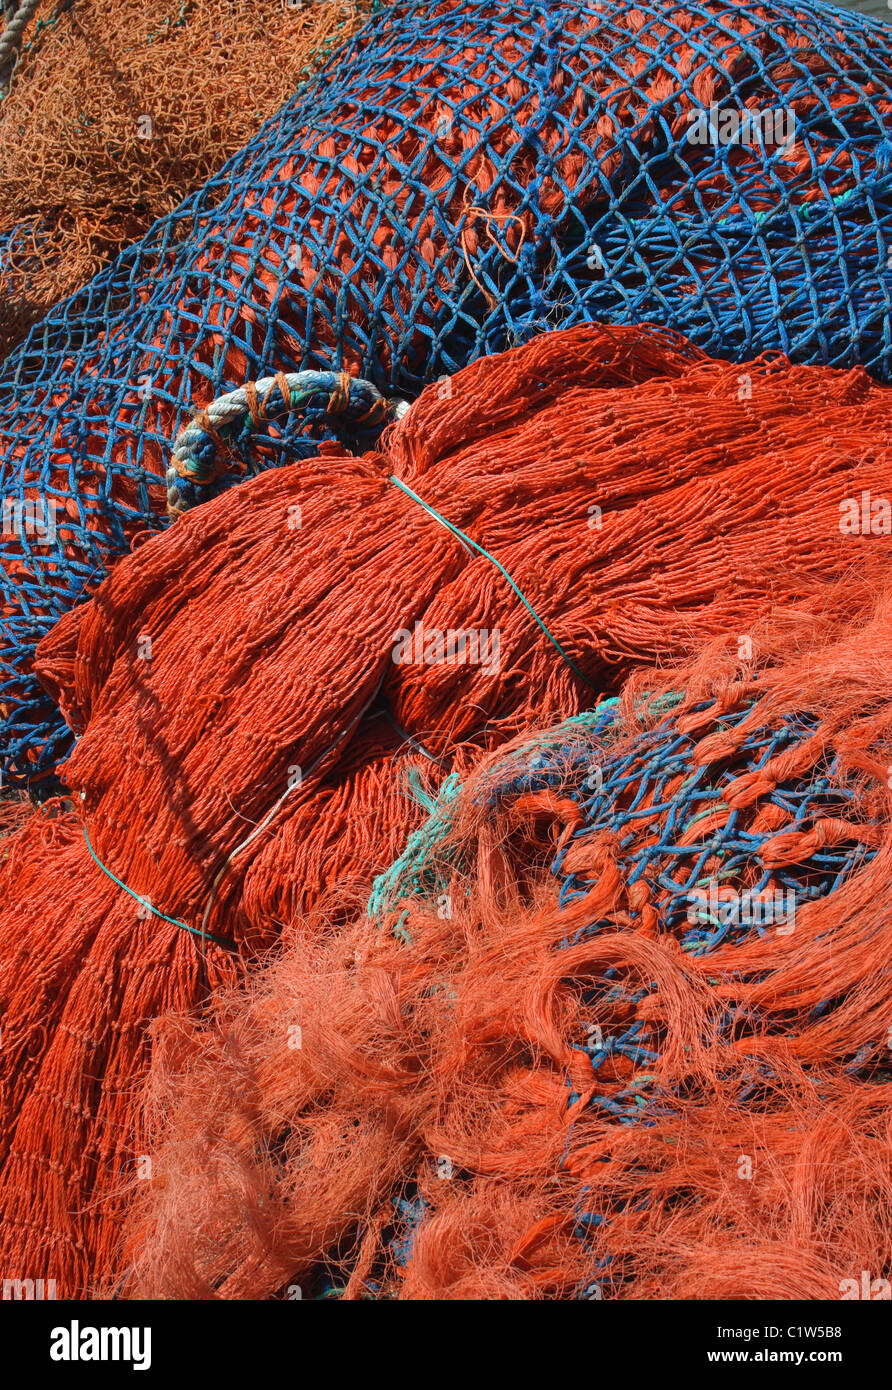 Redes de pesca de colores brillantes. Foto de stock